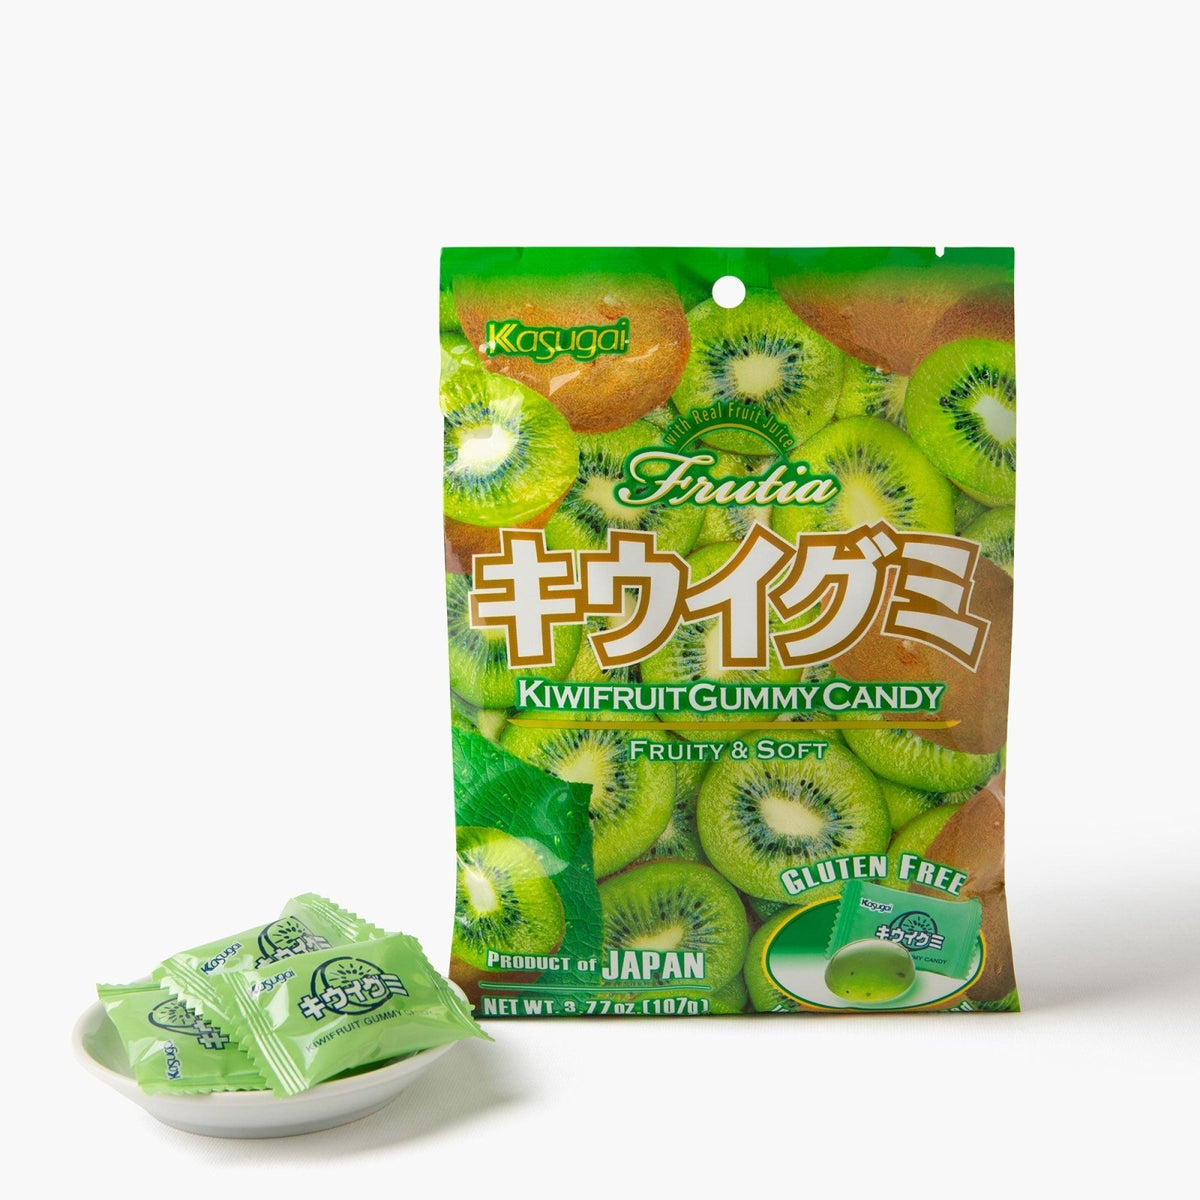 Kasugai gummy frutia kiwi - 107G - Kasugai -iRASSHAi